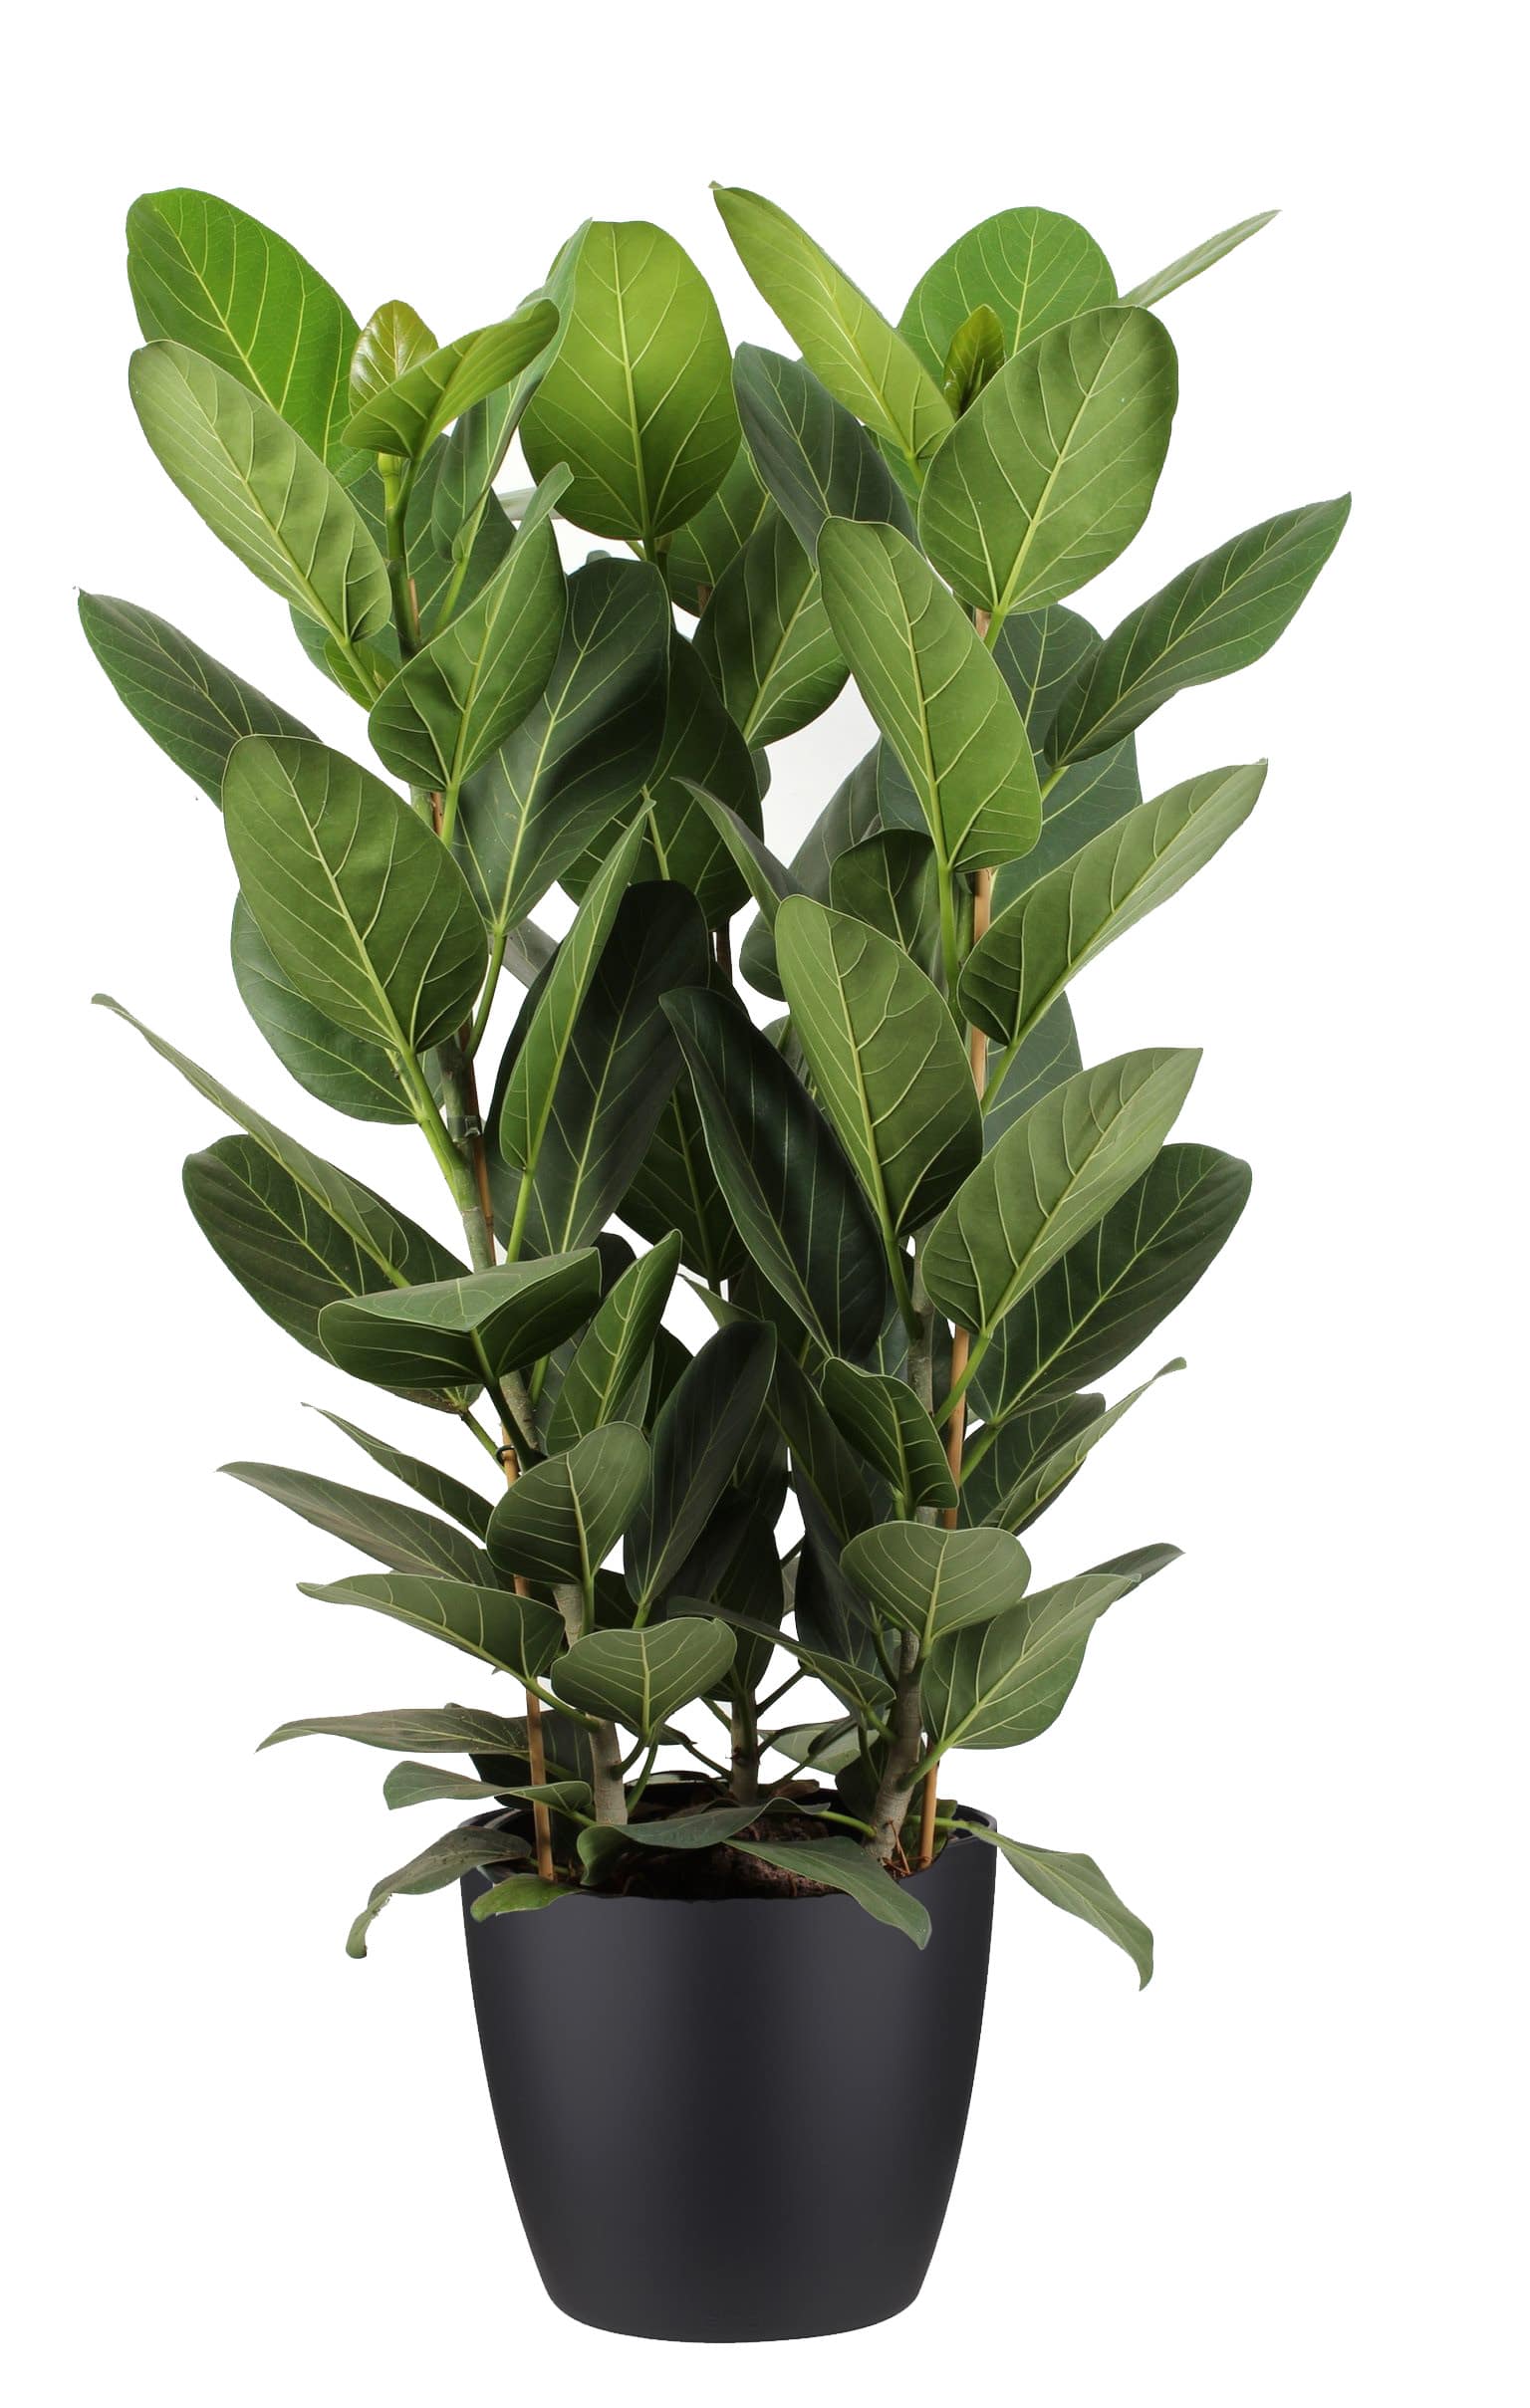 Melodrama Arthur noodzaak Ficus Audrey in zwarte sierpot - Een stoere plant met mooie lichte nerven